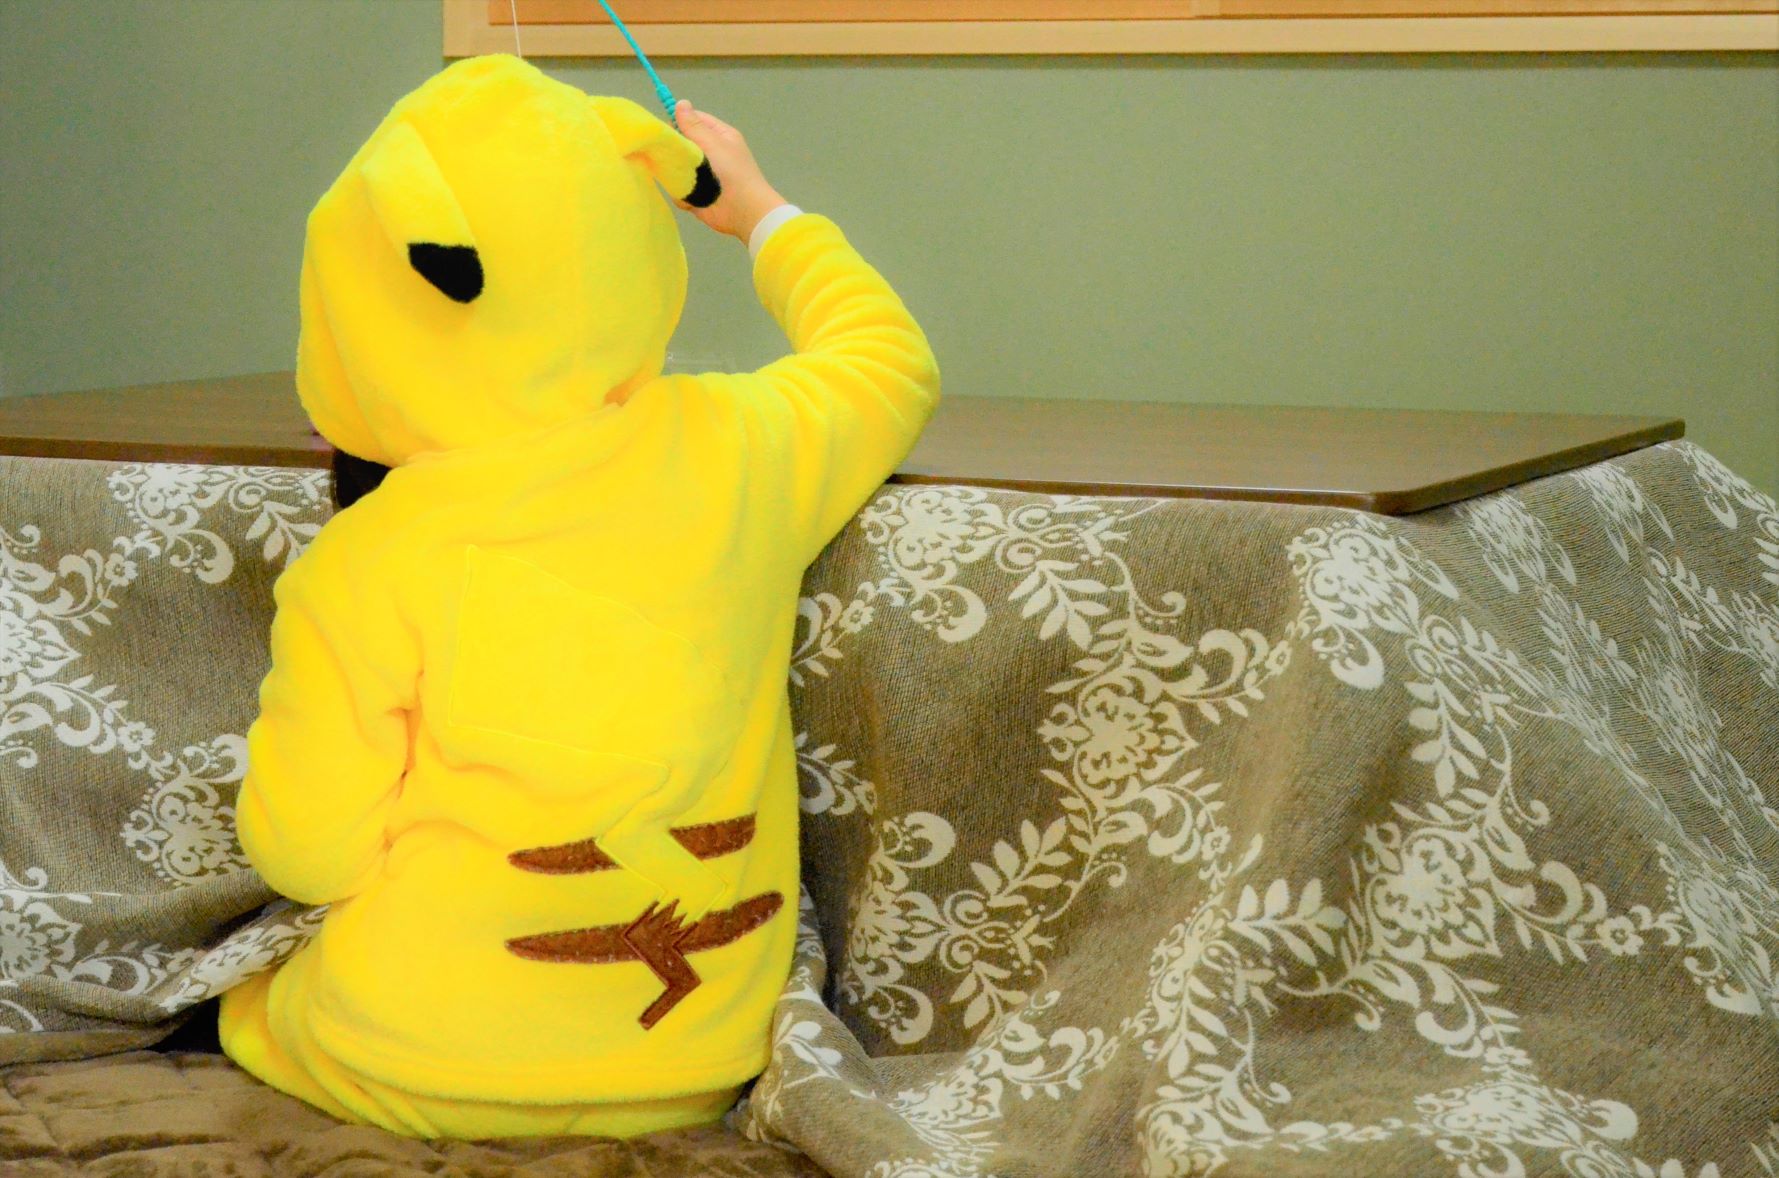 Pikachu appeared in the kotatsu